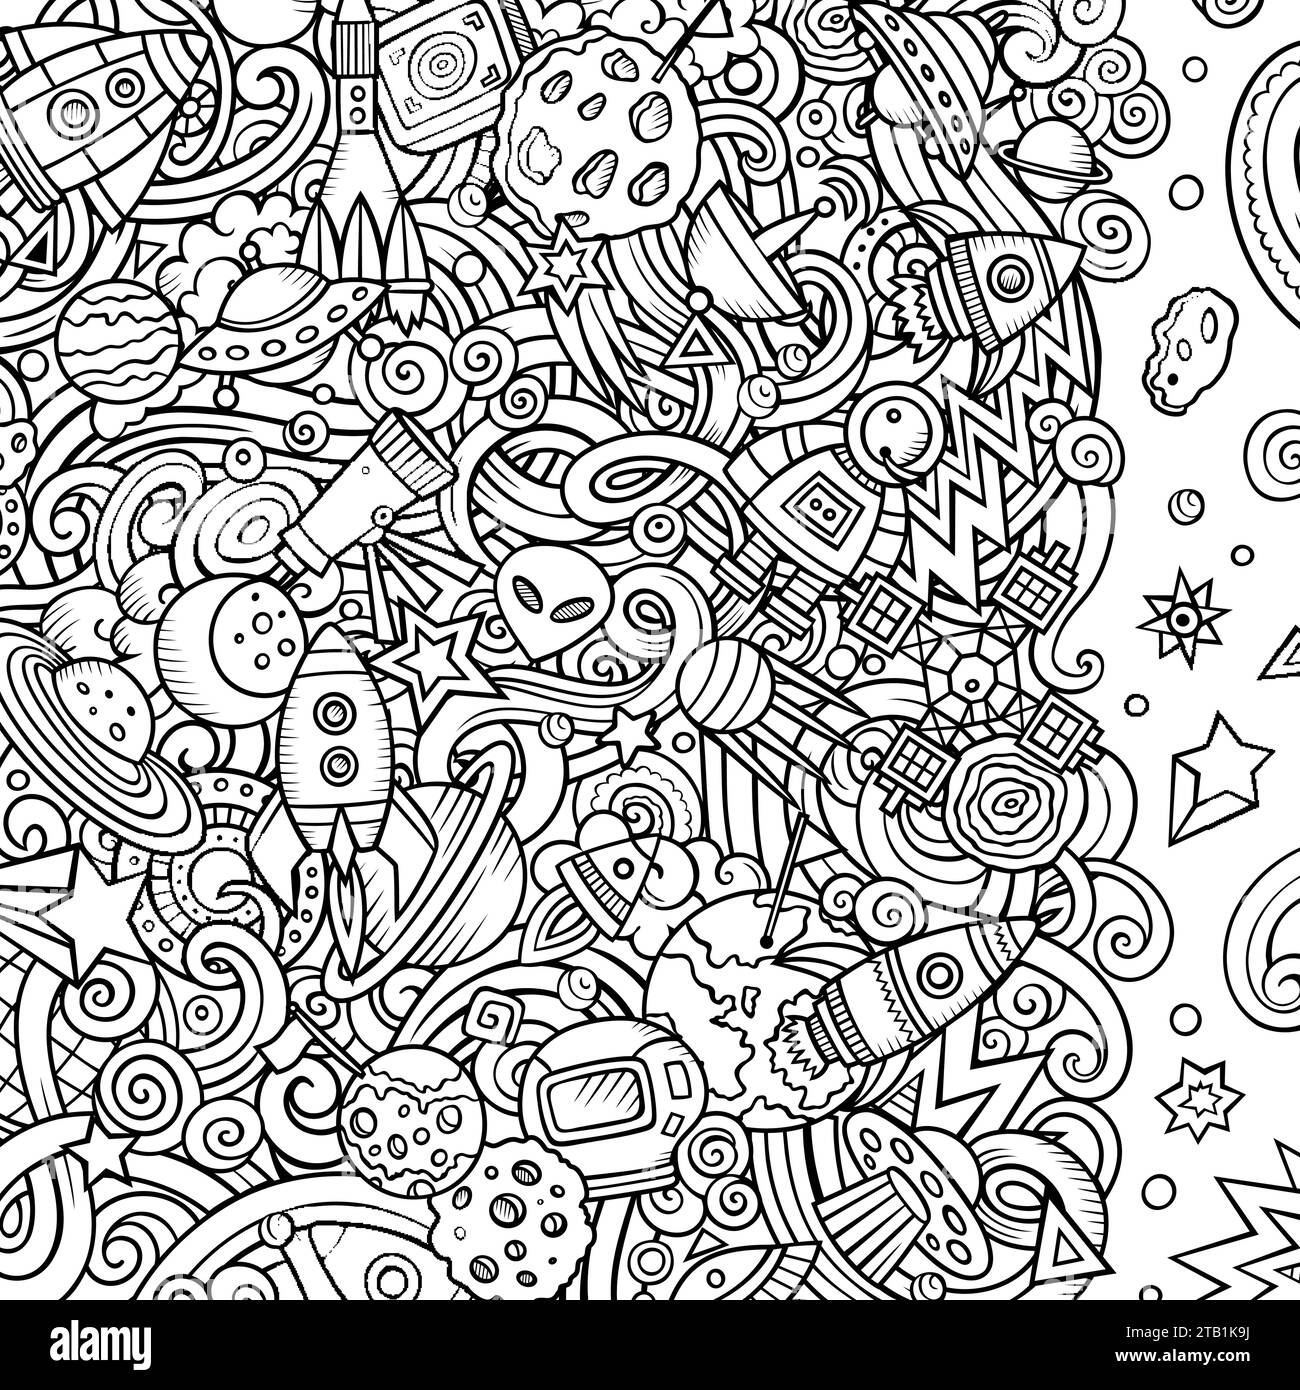 Cartoni animati vettoriali Doodles Space frame. Schizzo, dettagliato, con molti oggetti di sfondo. Line art cosmico bordo divertente Illustrazione Vettoriale